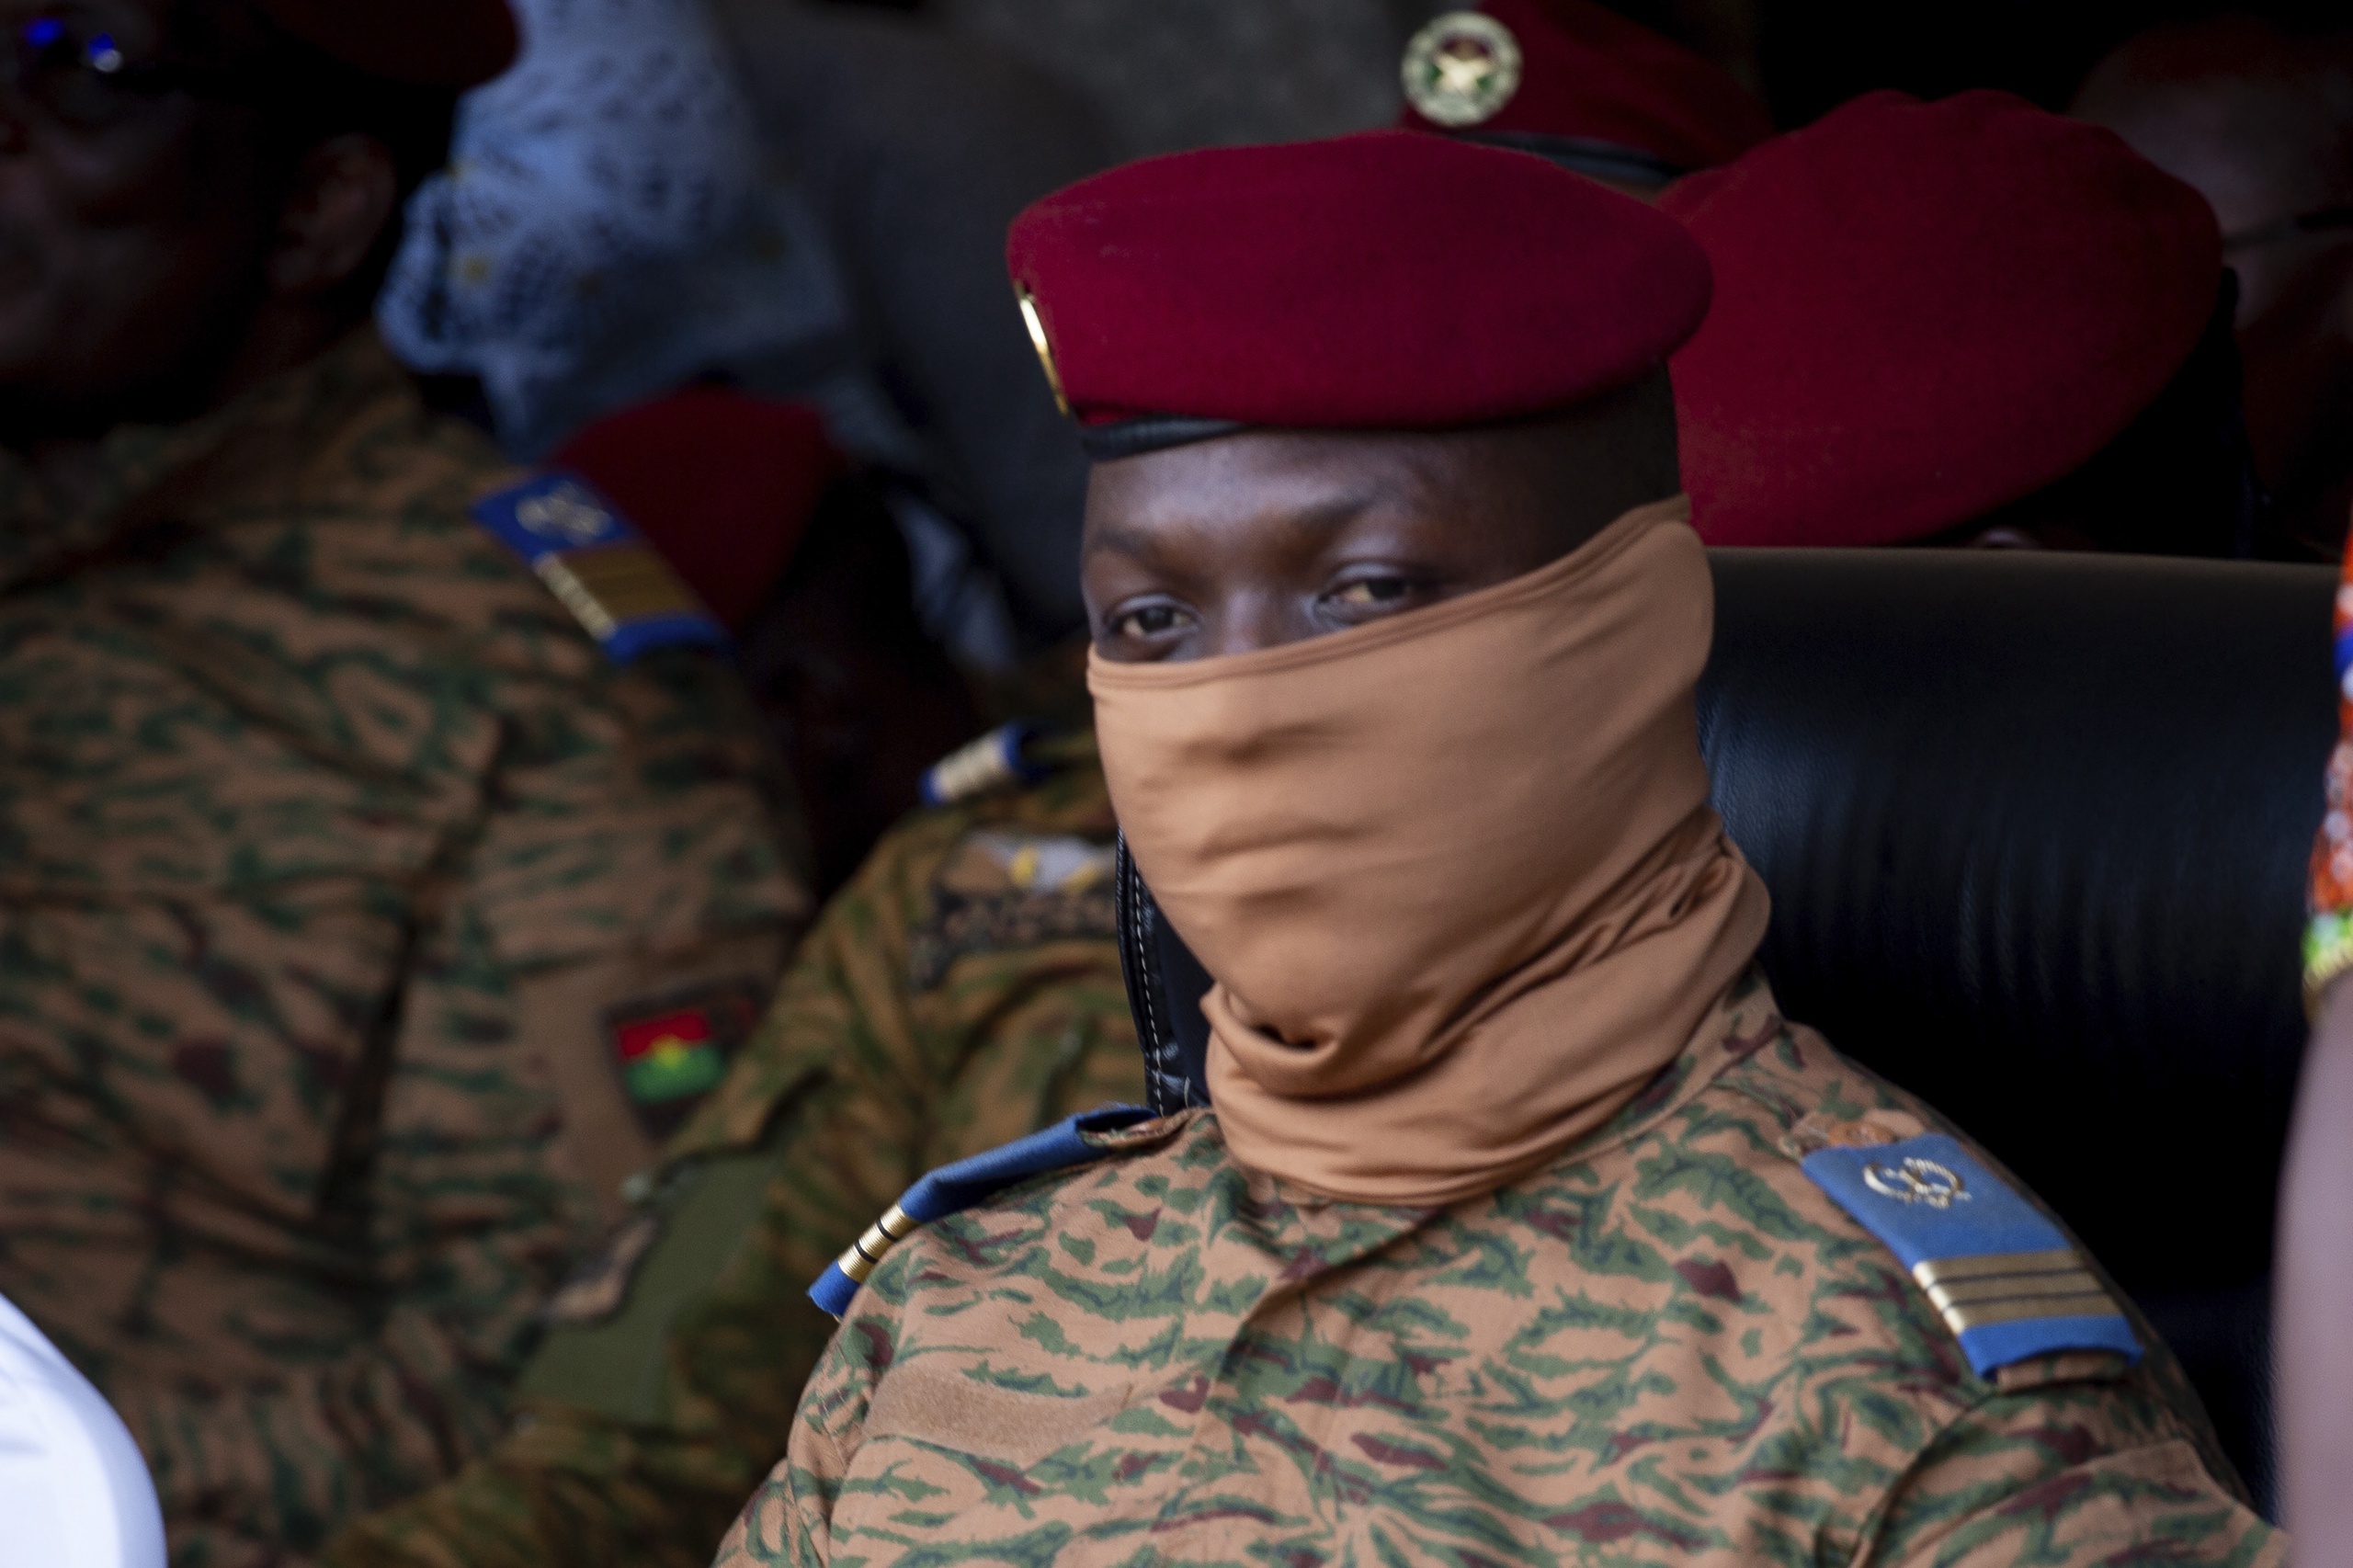 Burkina Faso's staatshoofd kapitein Ibrahim Traoré. De militaire junta van het West-Afrikaanse Burkina Faso heeft de radio-uitzendingen van Radio France Internationale van Frankrijk opgeschort wegens 'valse berichten' en 'het geven van een stem aan gewapende groepen'. 